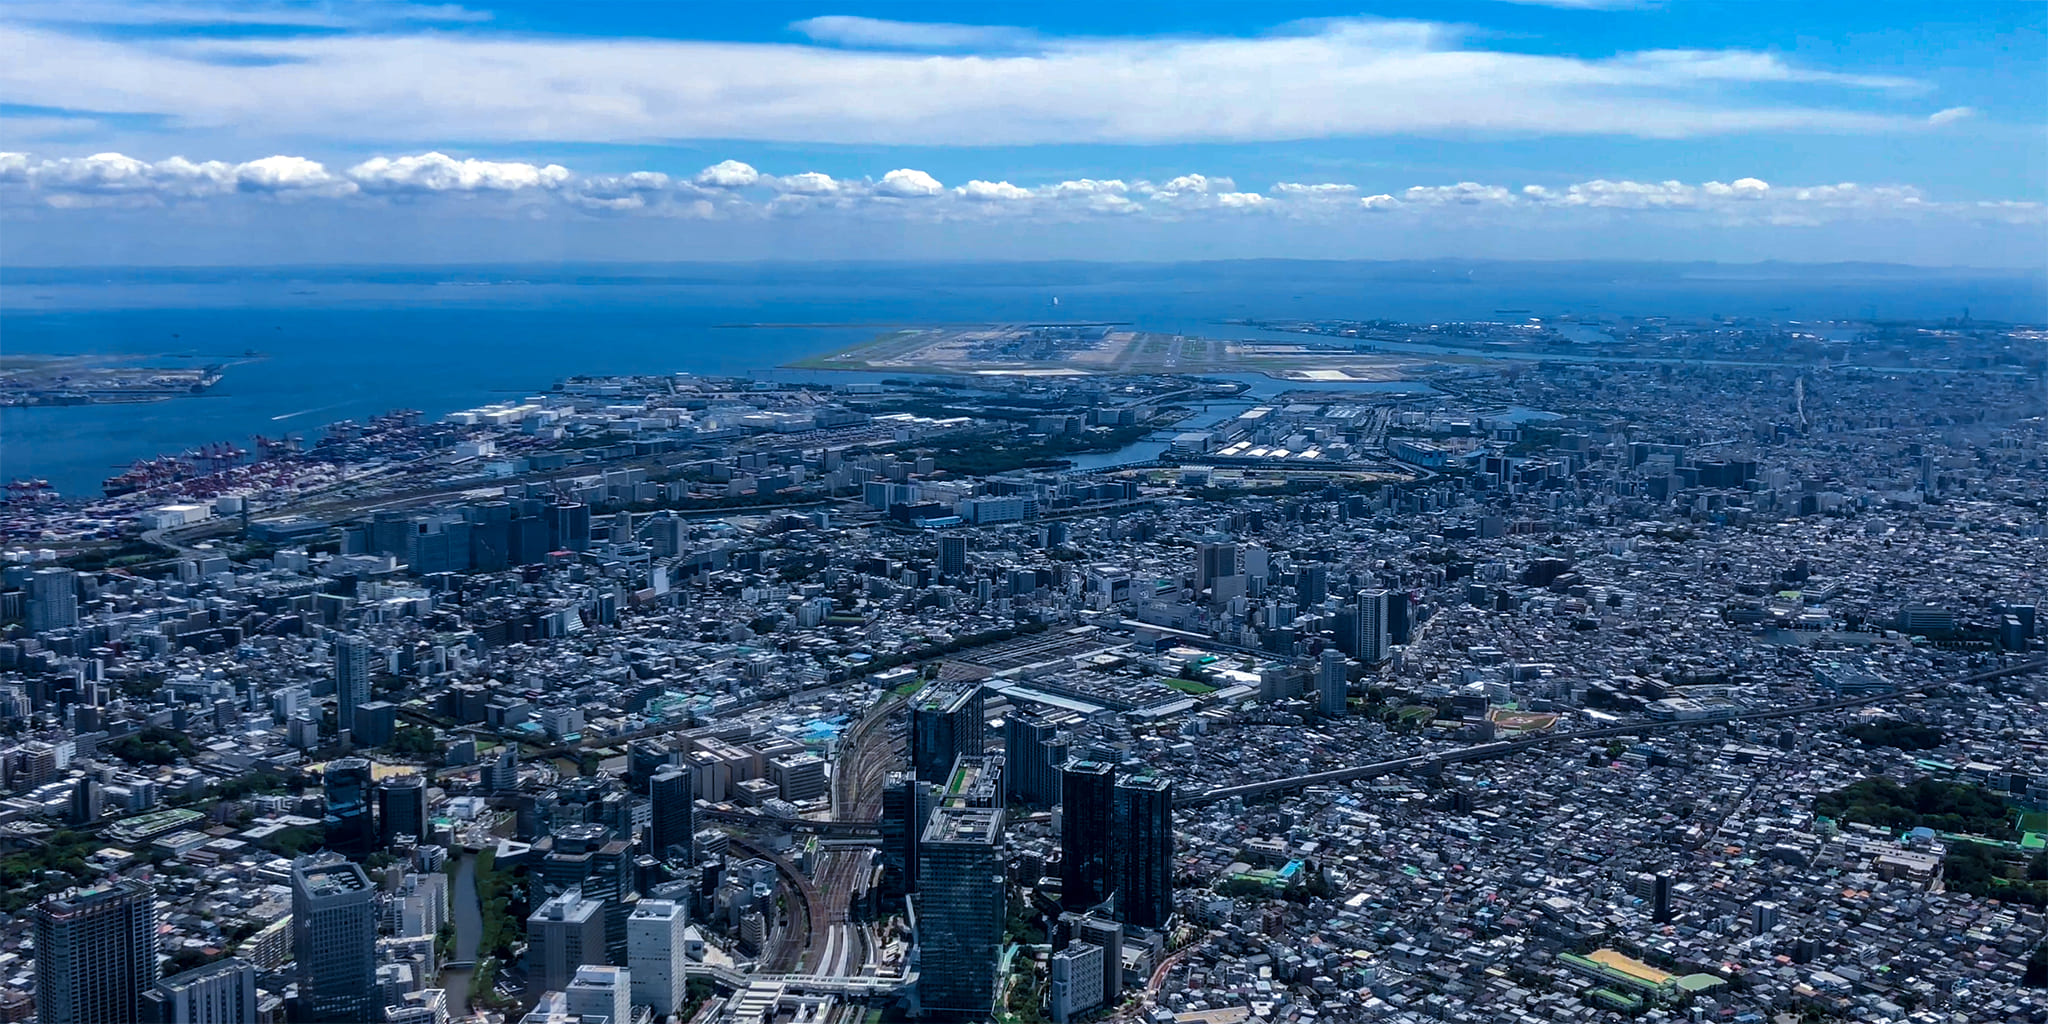 ヘリコプターで東京上空をフライトして見える羽田